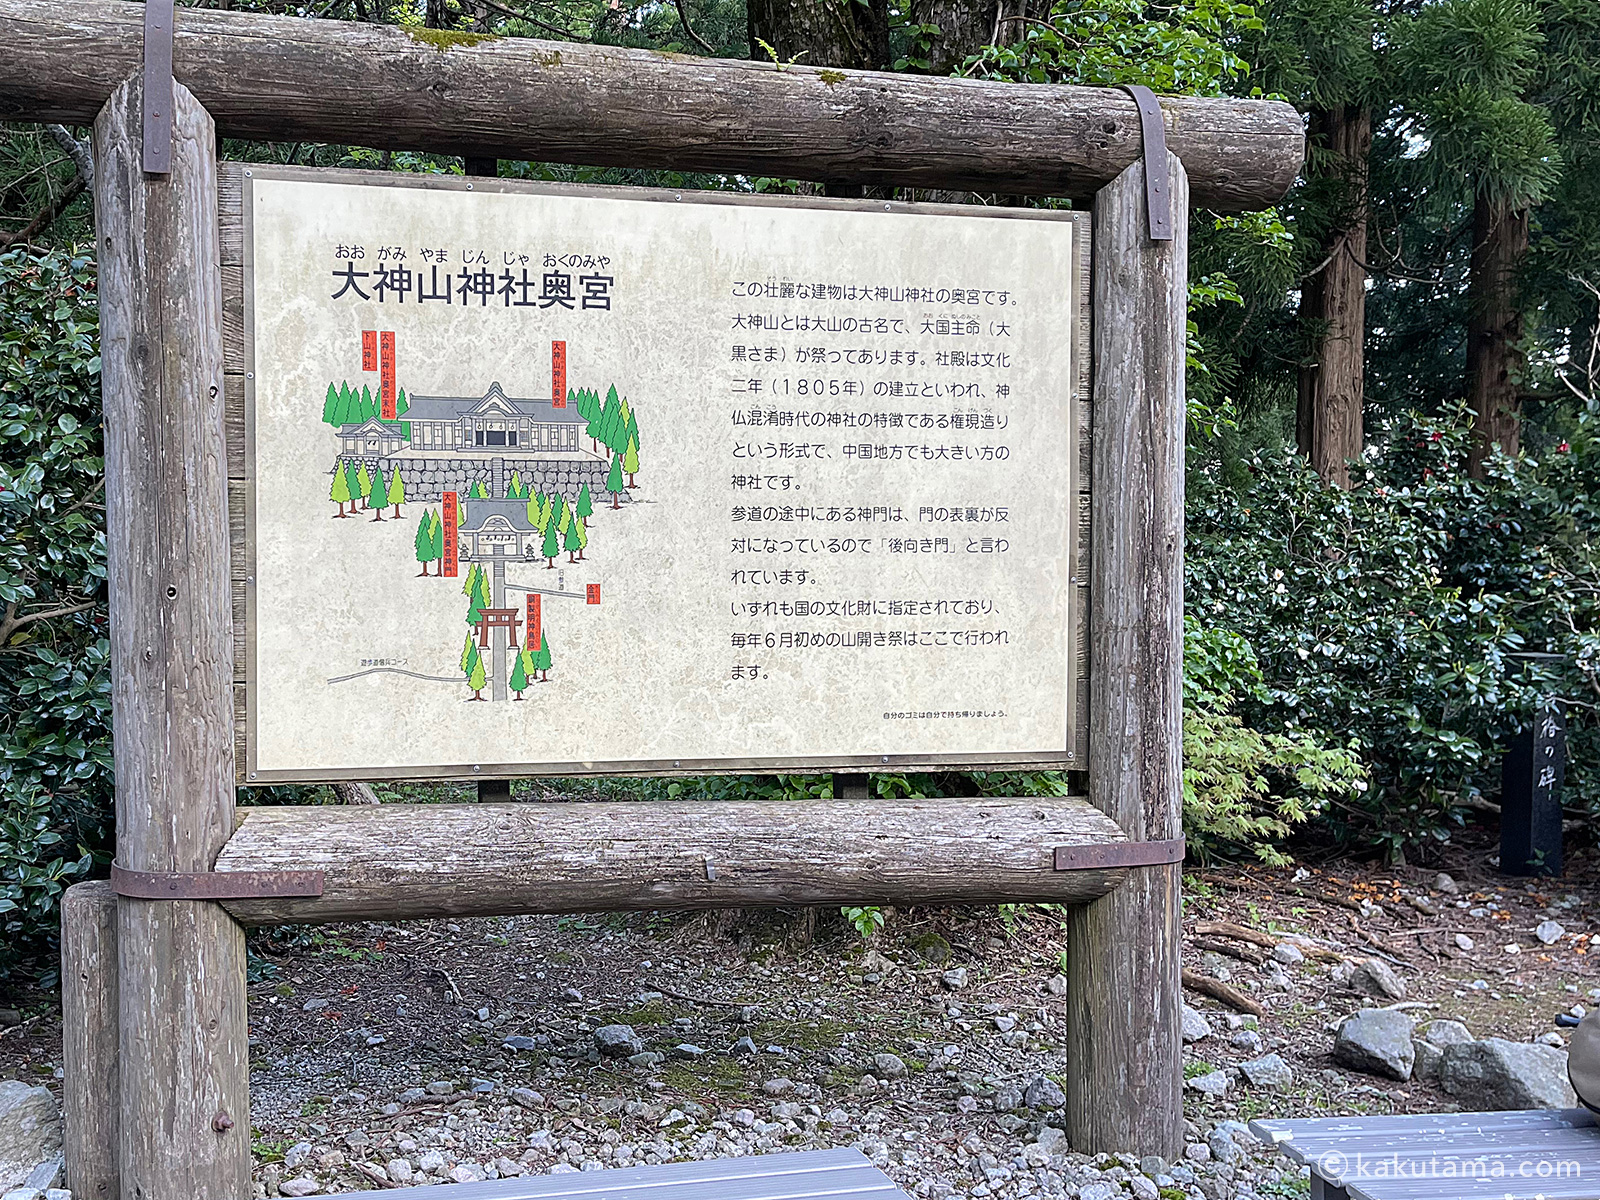 大神山神社の由来の説明看板の写真